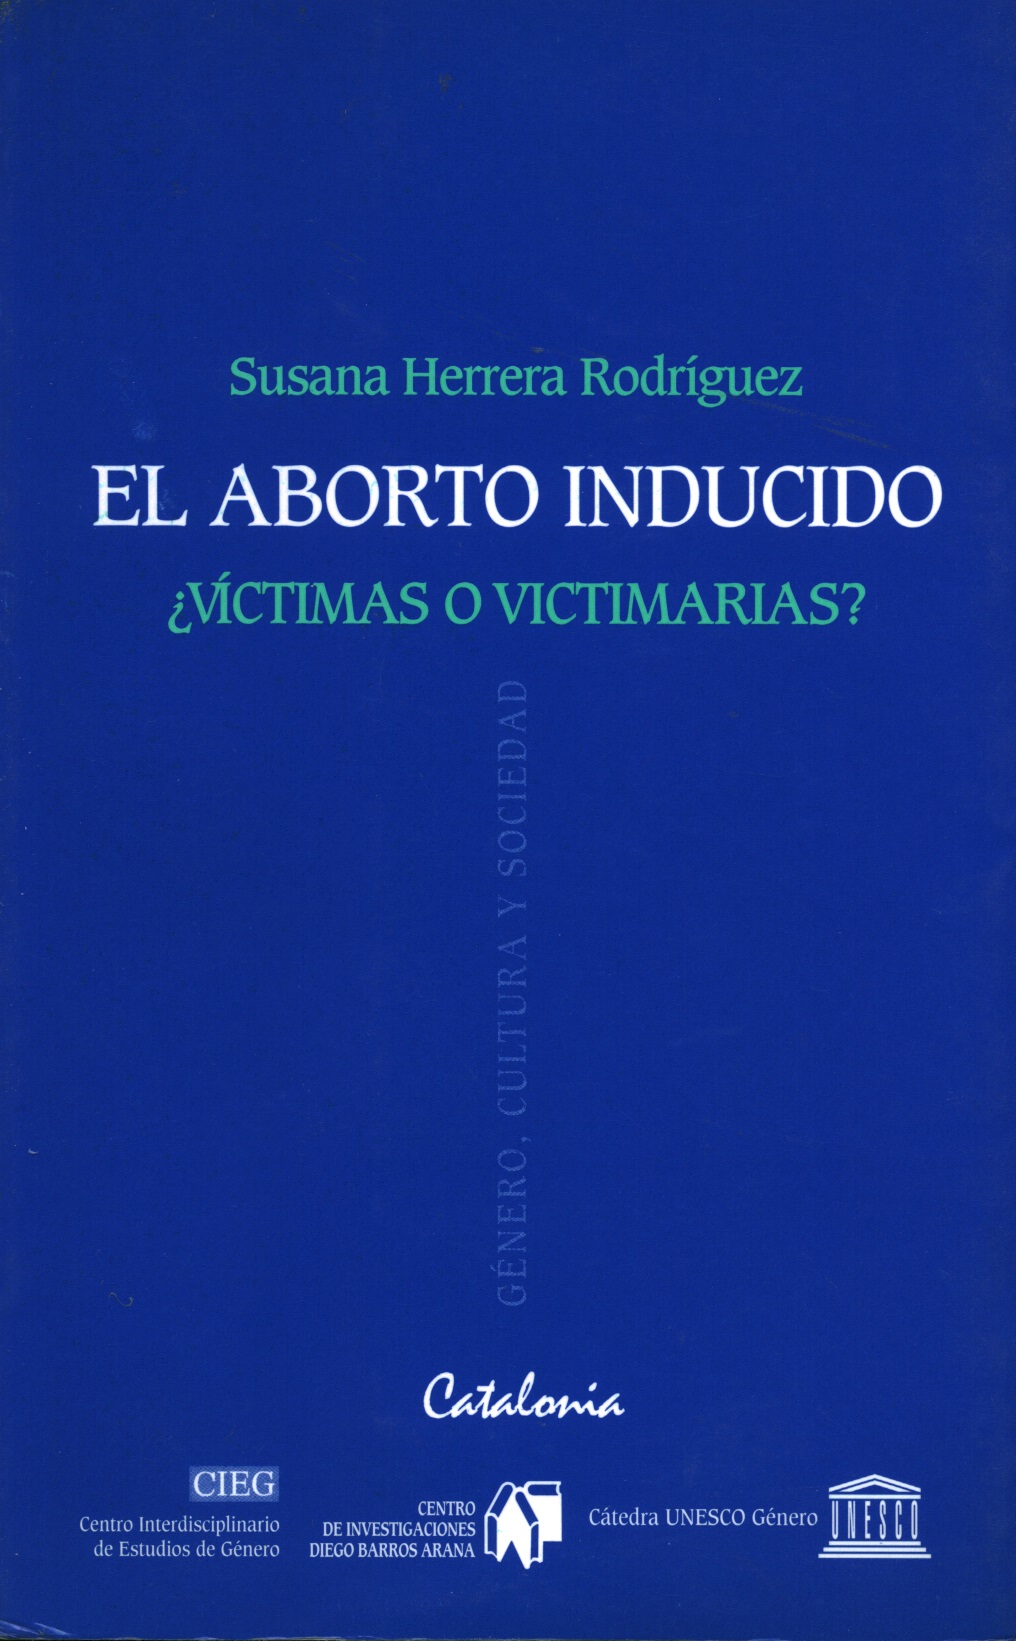 El aborto inducido ¿víctimas o victimarias?